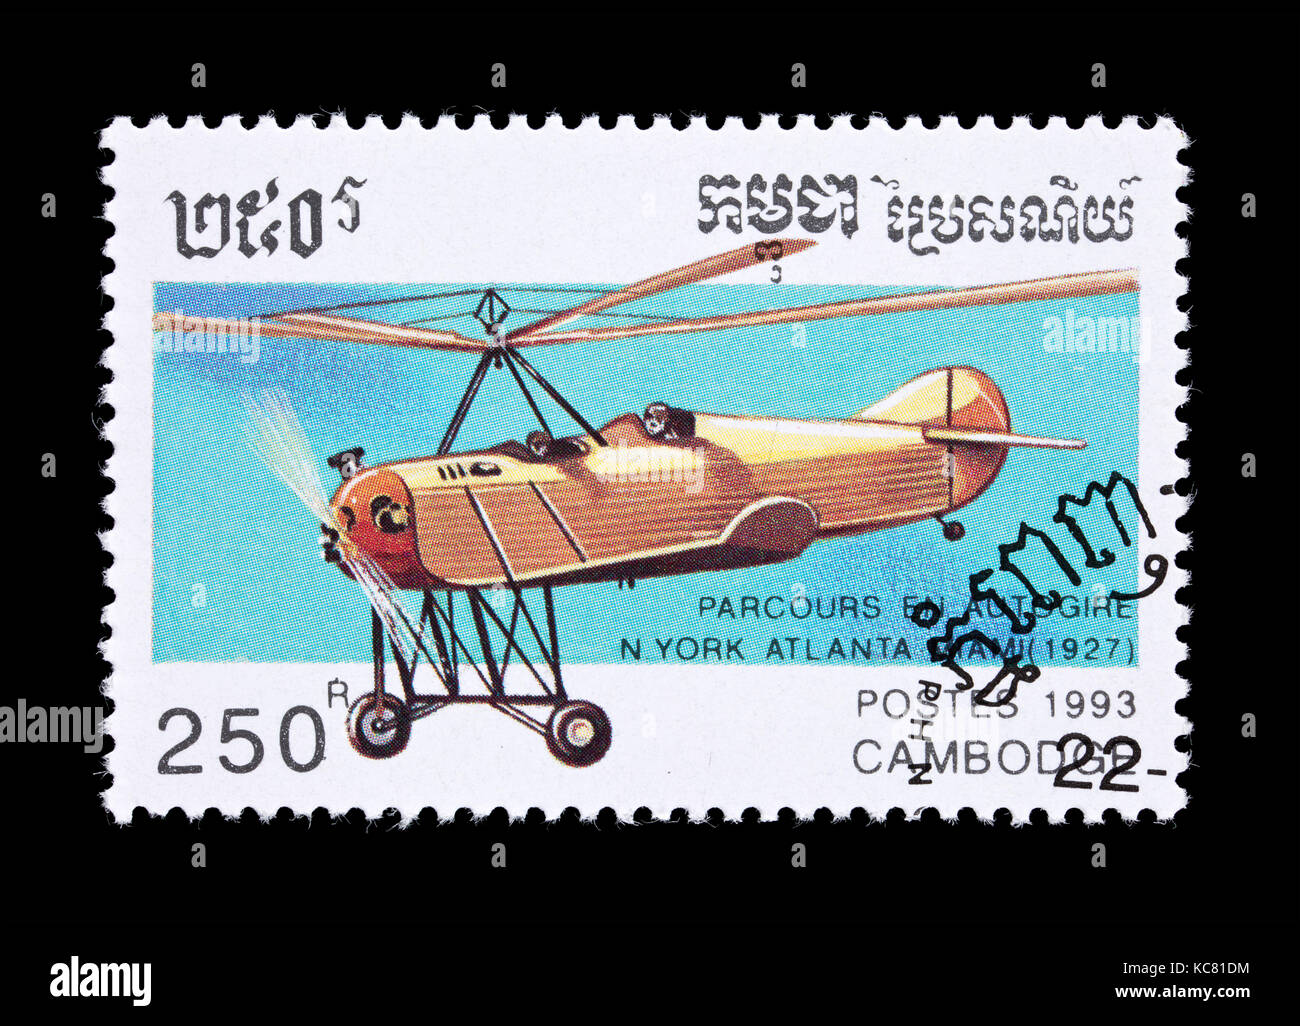 Timbre-poste du Cambodge représentant un New York - Atlanta - Miami vol autogyre Banque D'Images